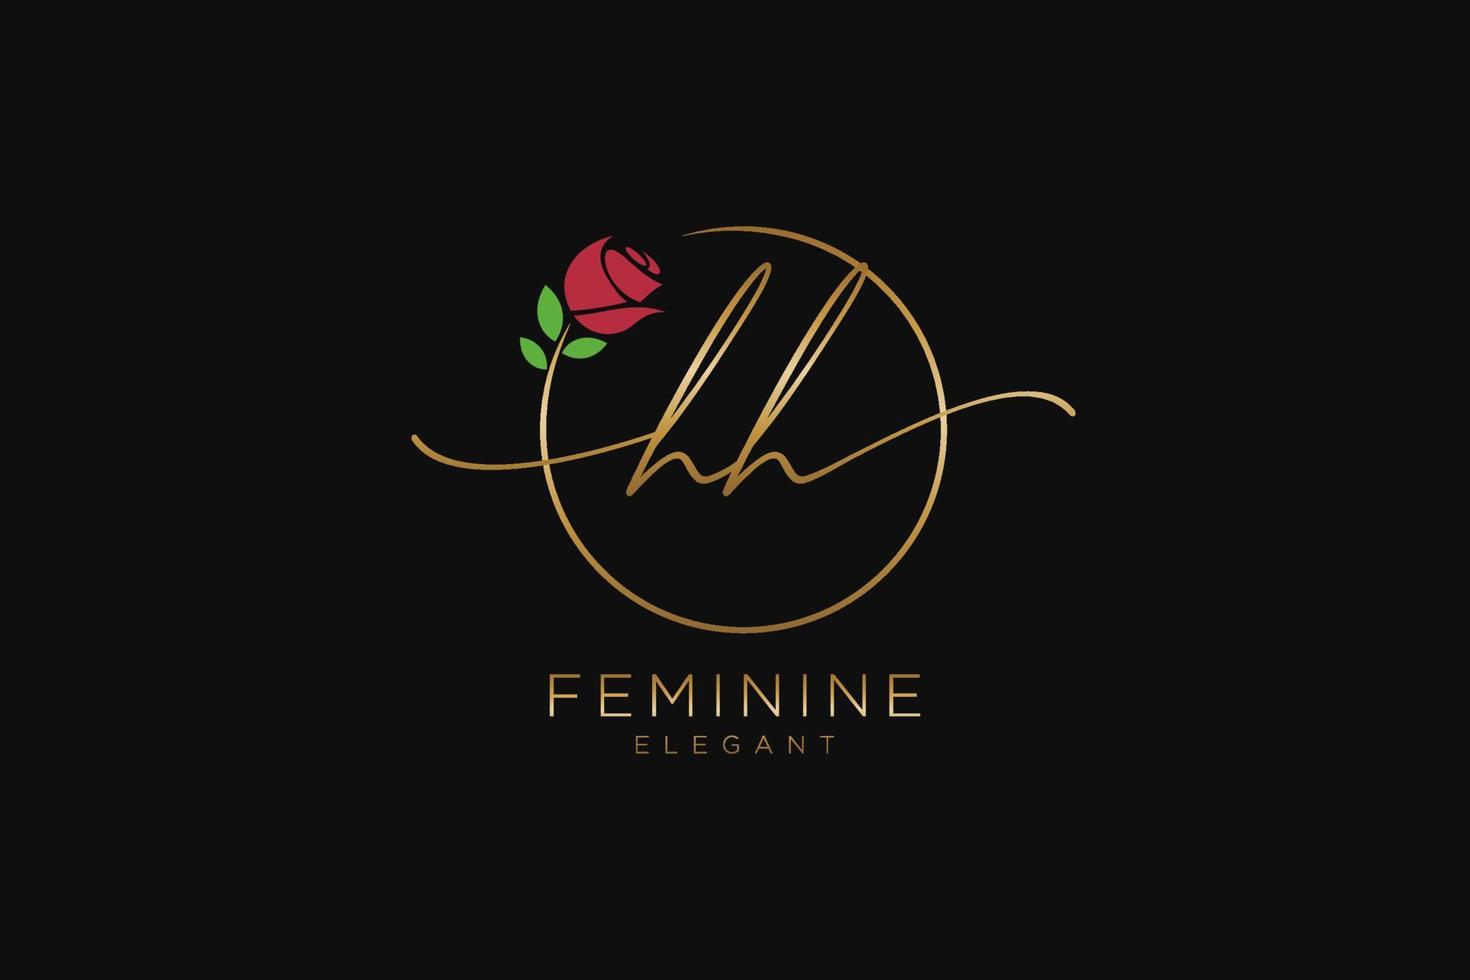 monogramme de beauté du logo féminin initial hh et design élégant du logo, logo manuscrit de la signature initiale, mariage, mode, floral et botanique avec modèle créatif. vecteur